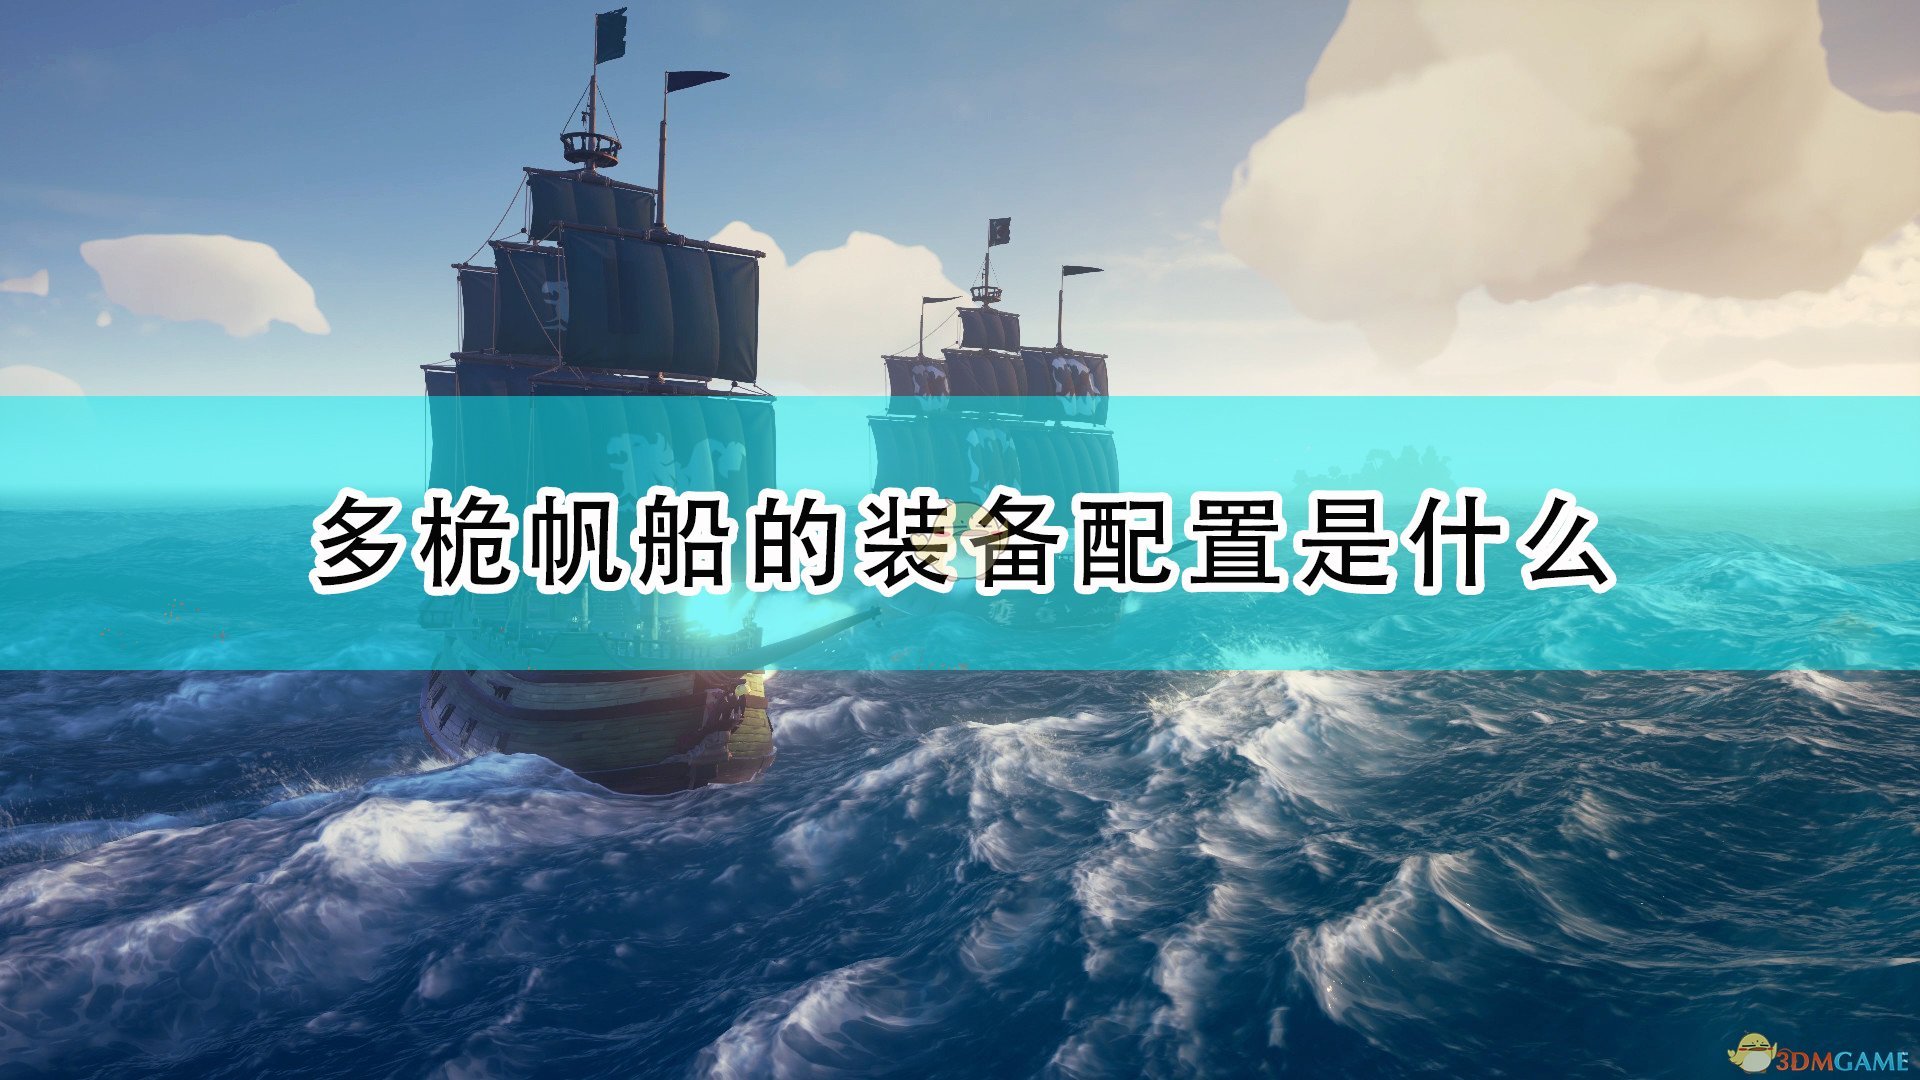 《盜賊之海》多桅帆船裝備配置及物資介紹